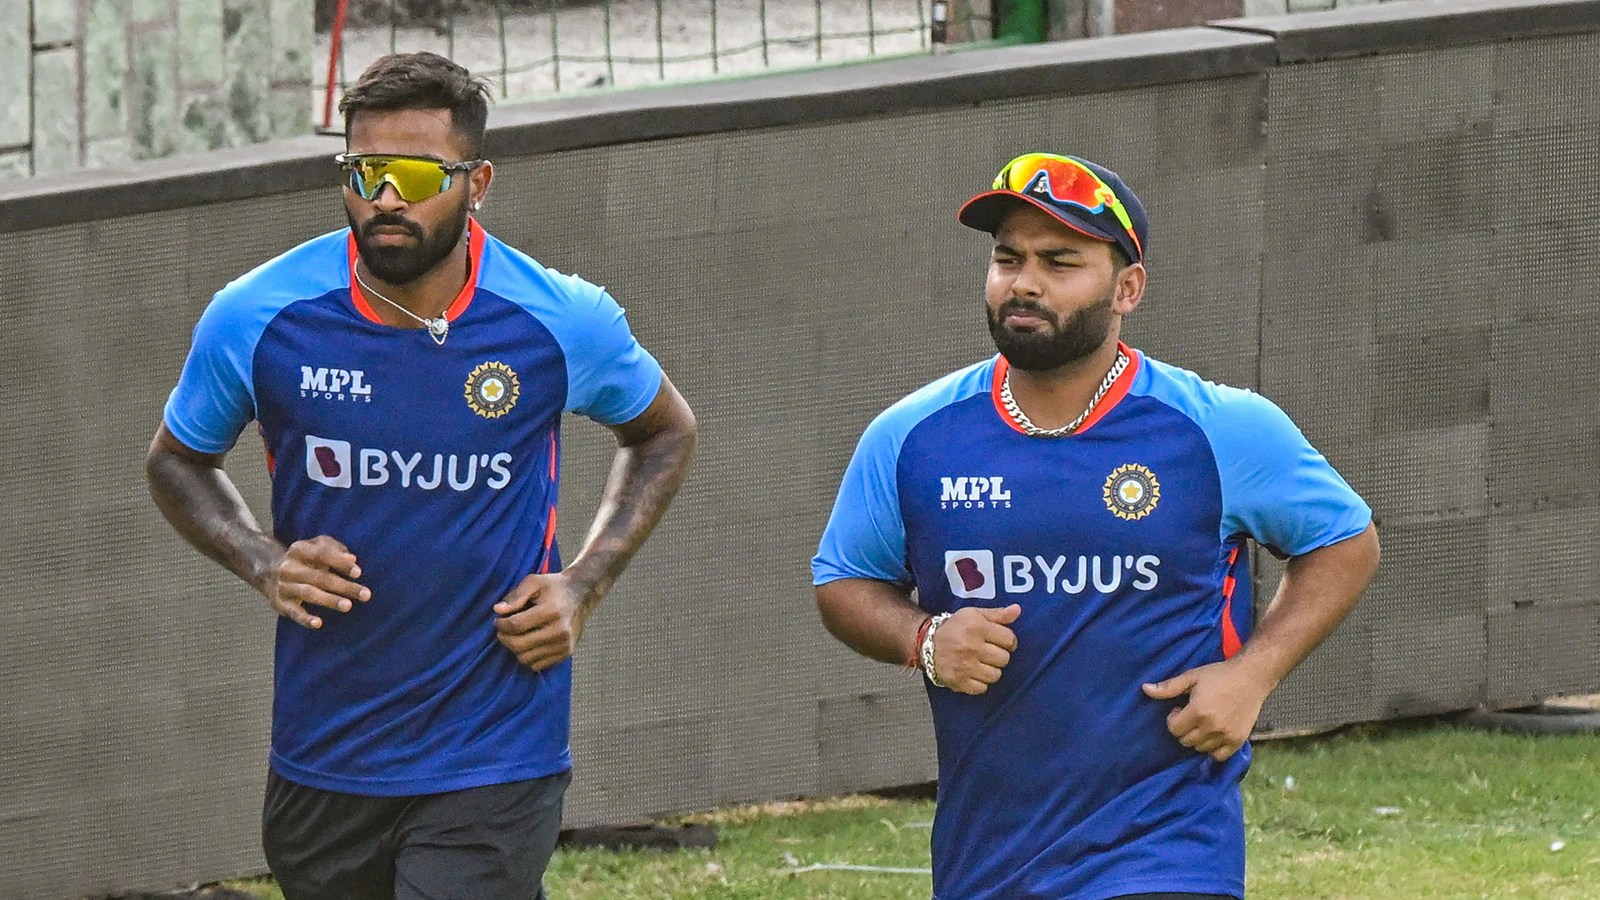 India T20 Captain: BCCI अधिकारी का खुलासा, 2024 तक रोहित शर्मा के टी20 कप्तान बने रहने की संभावना नहीं, हार्दिक पांड्या और कोहली नाम पर विचार: Follow LIVE Updates